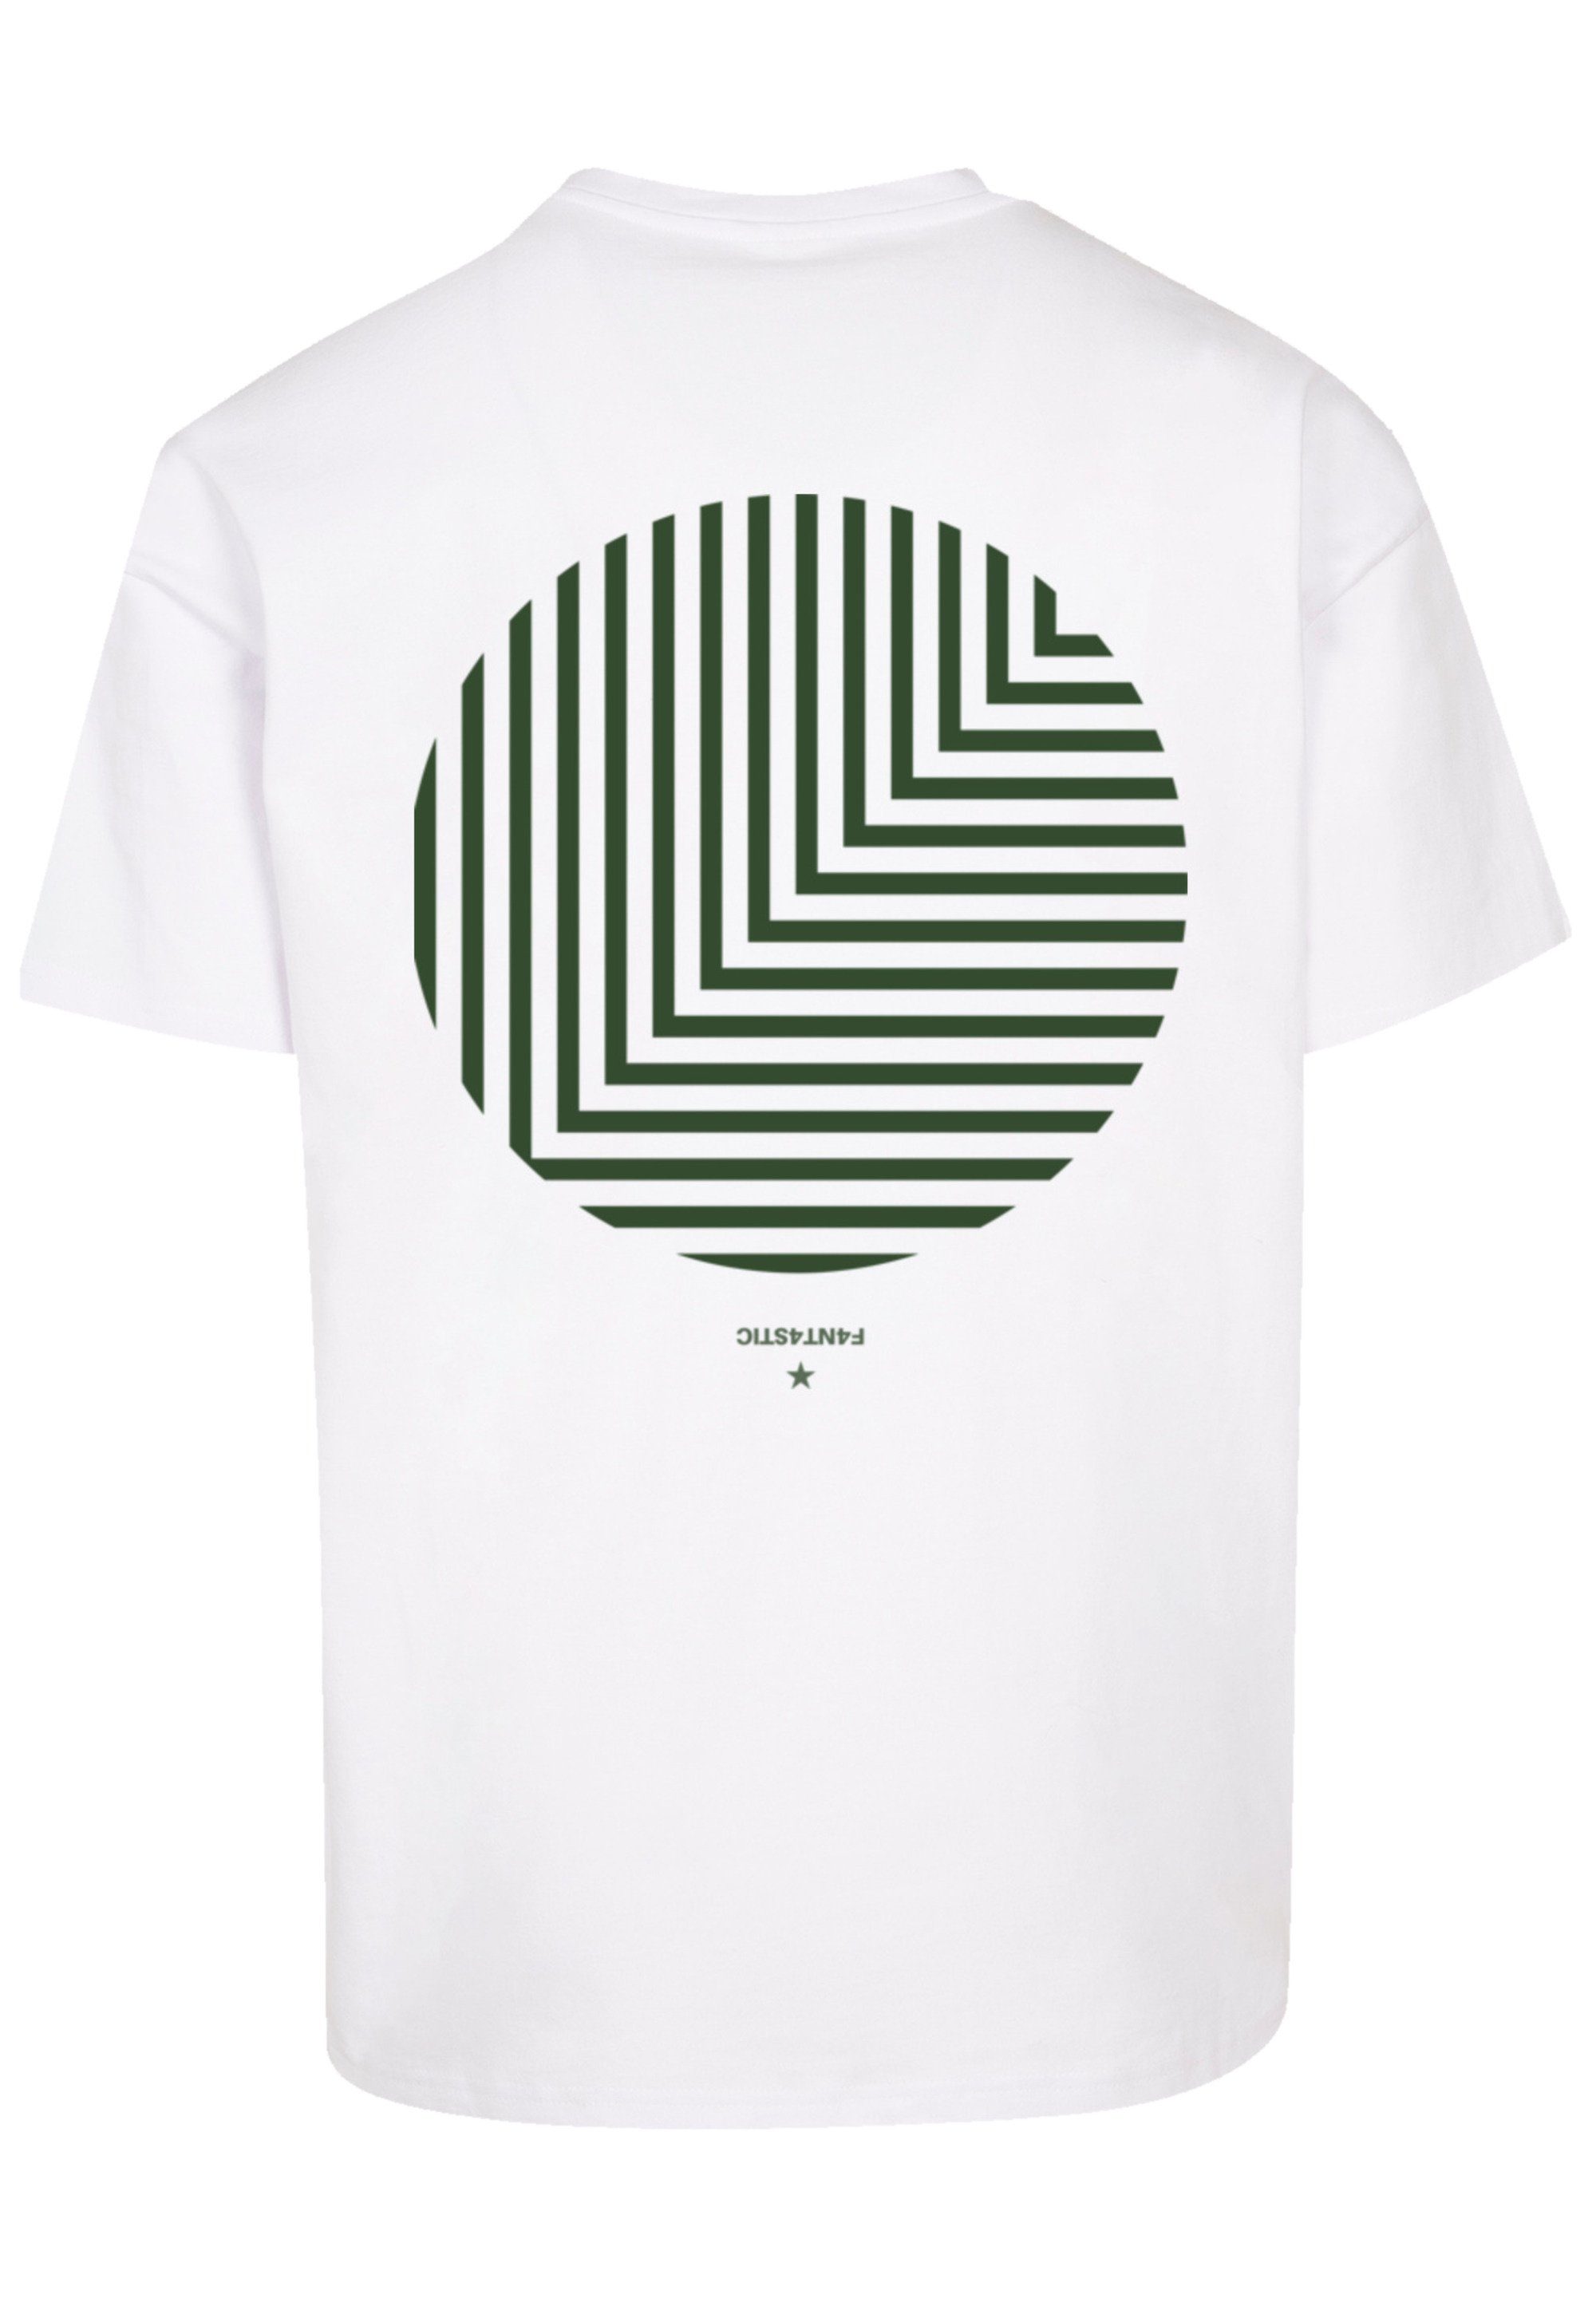 weiß Print T-Shirt Geometrics F4NT4STIC Grau